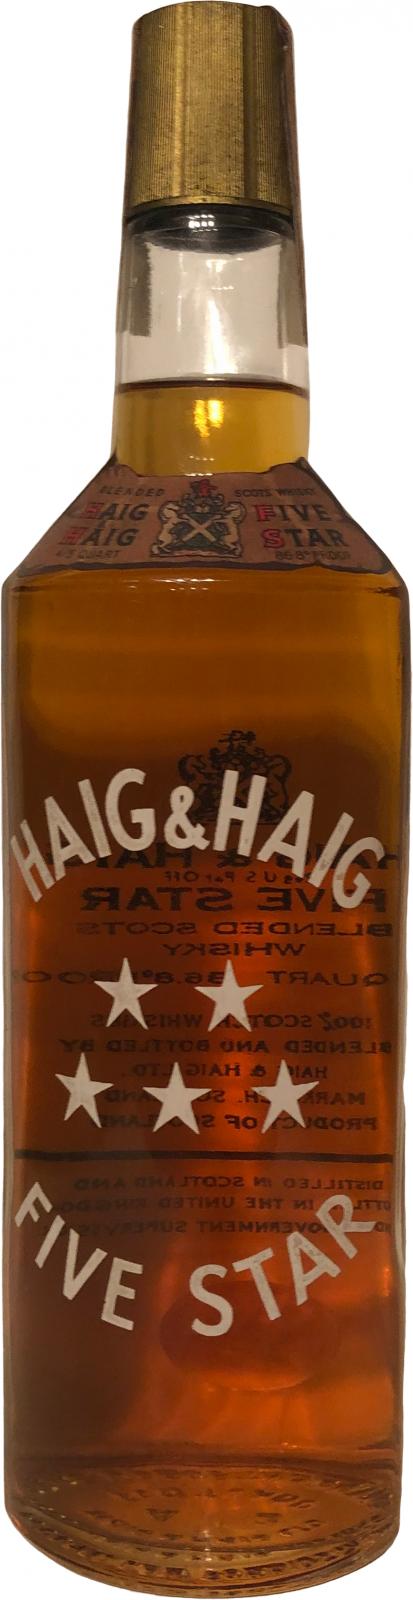 Haig & Haig Five Star - Ratings and reviews - Whiskybase